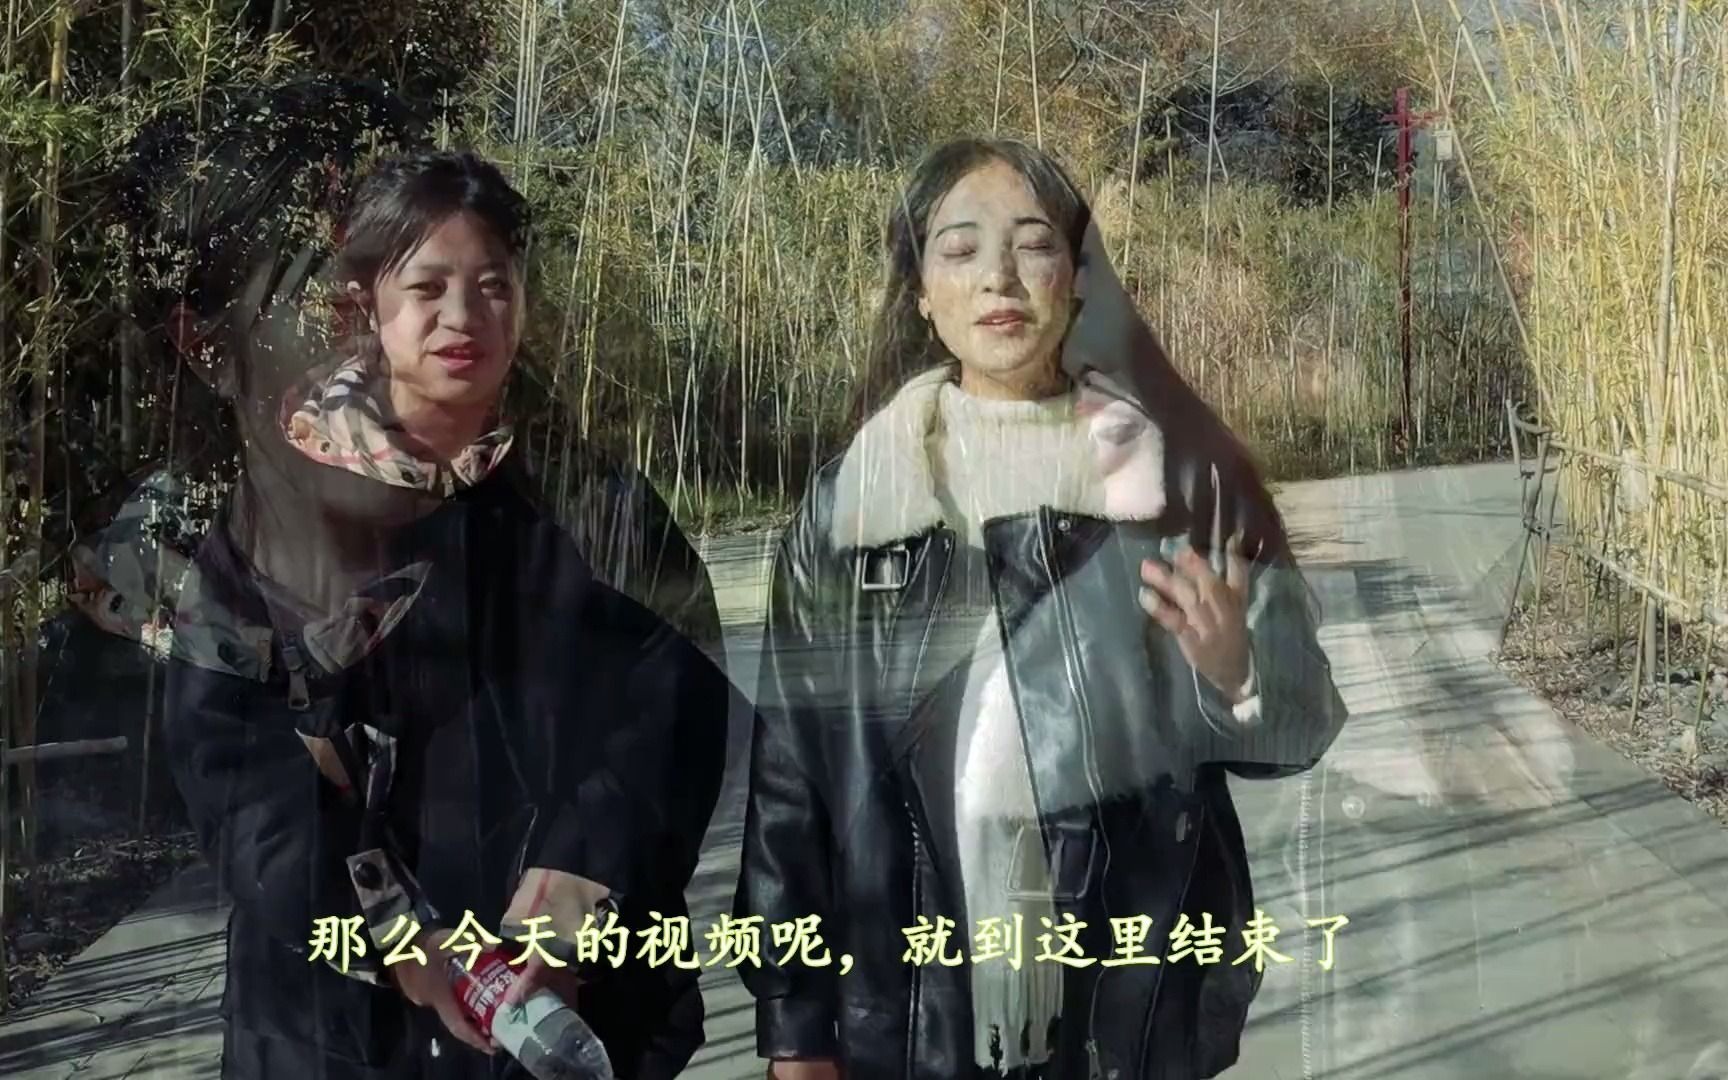 藏族女孩愿意和汉族结婚吗？卓玛邀请朋友回答，两人意见相同